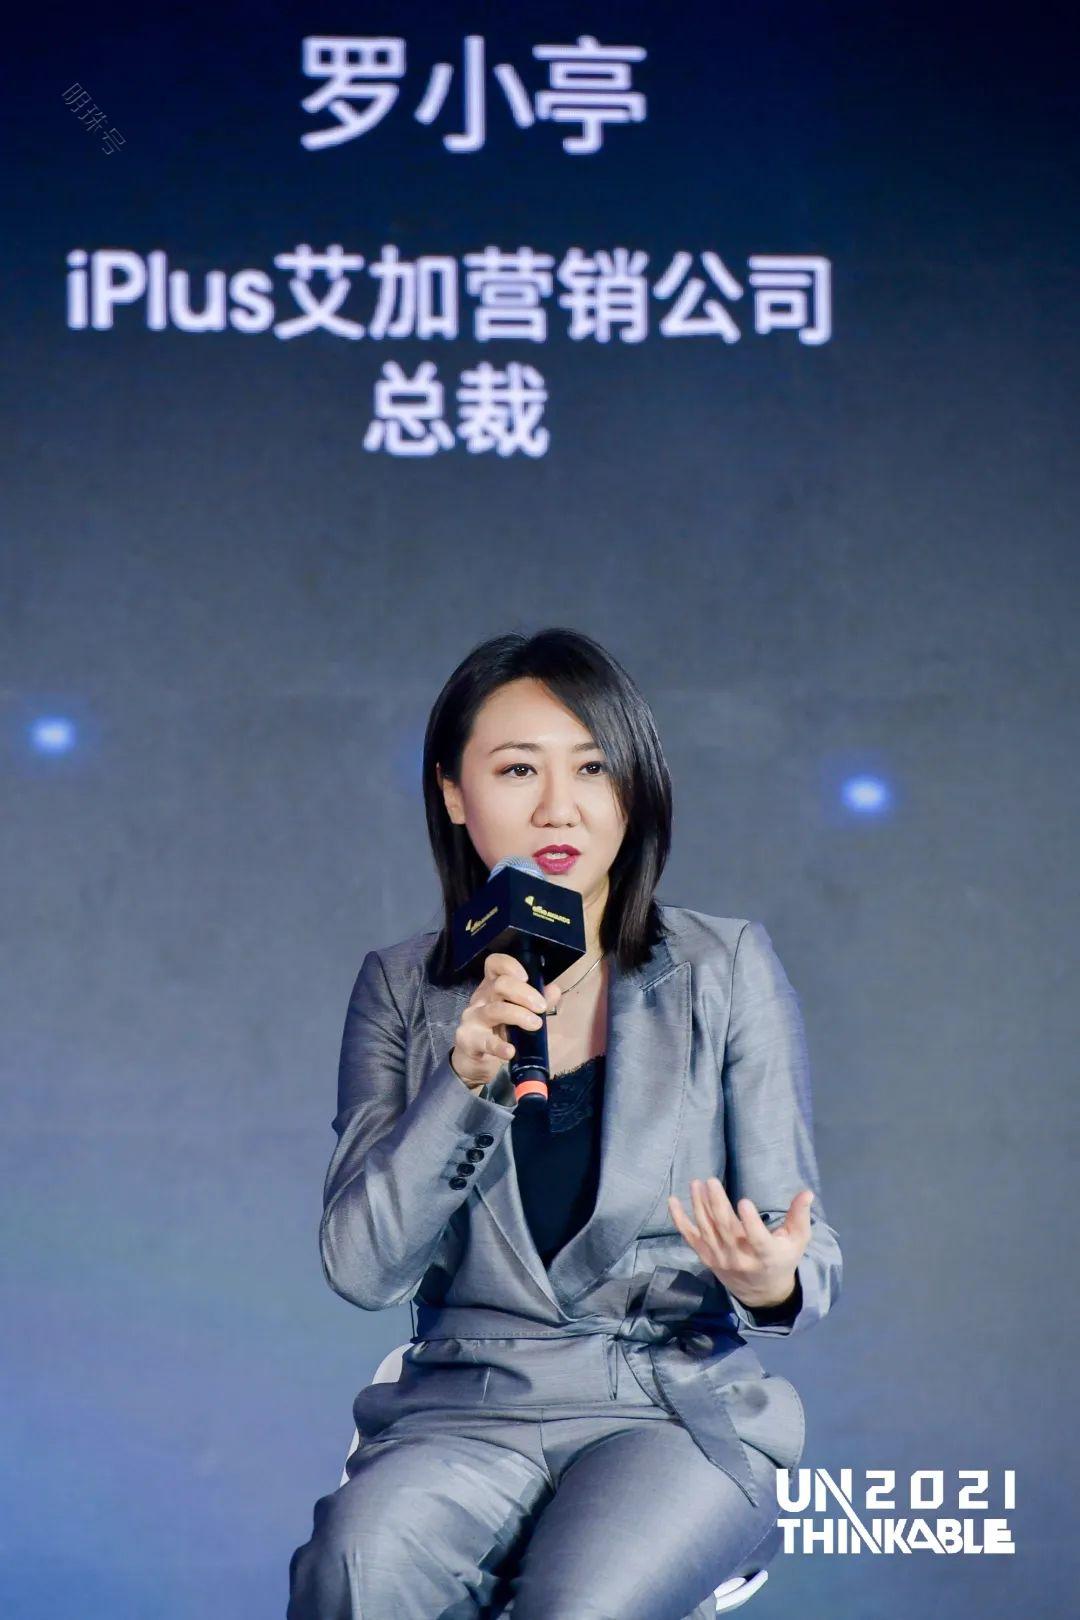 大中华区艾菲携手iPlus艾加营销开启体育营销赛道